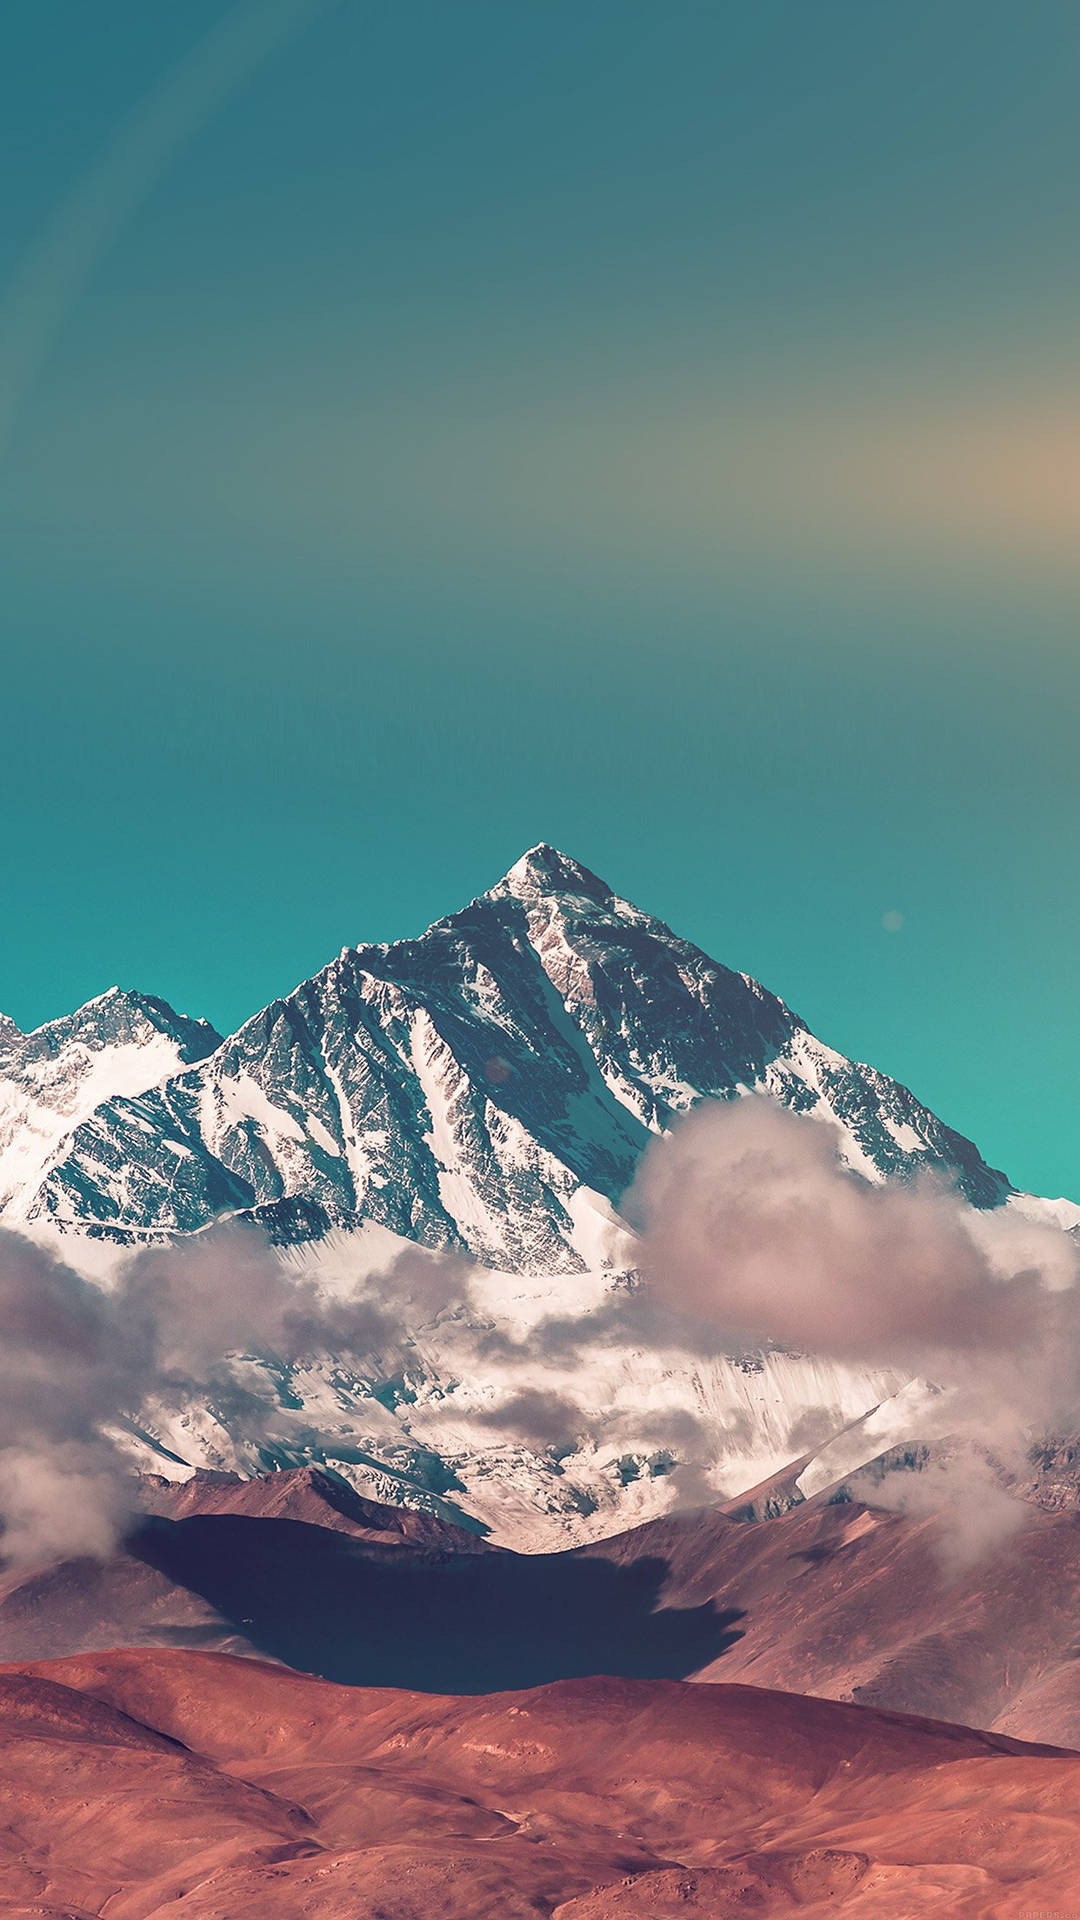 Hintergrundbildfür Smartphones Mit Dem Gipfel Des Mount Everest. Wallpaper